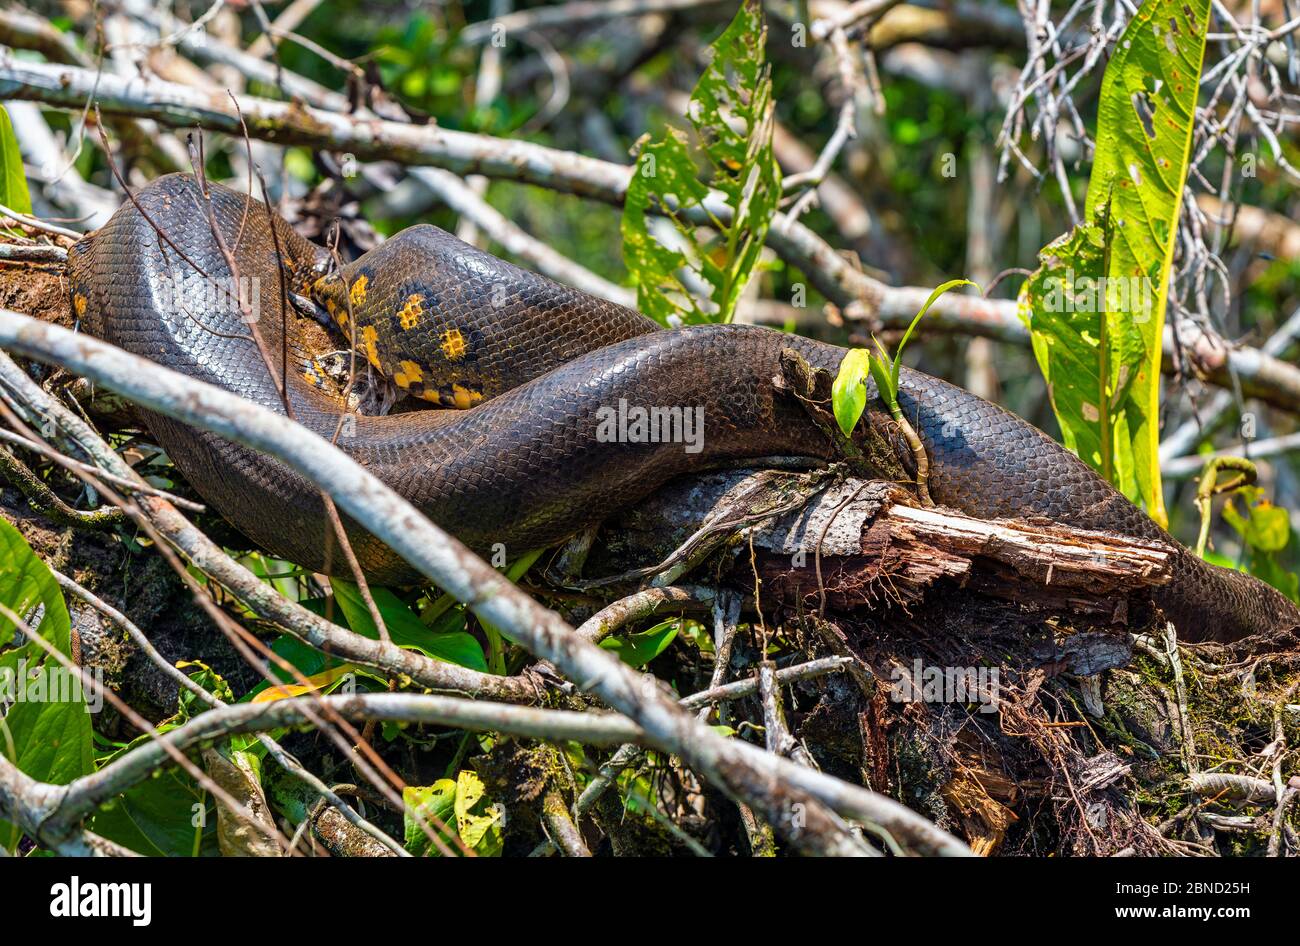 Un Anaconda Gigante (Eunectes murinus) lungo 5 metri che si nasconde nella foresta pluviale amazzonica lungo il fiume Napo, parco nazionale di Yasuni, Ecuador. Foto Stock